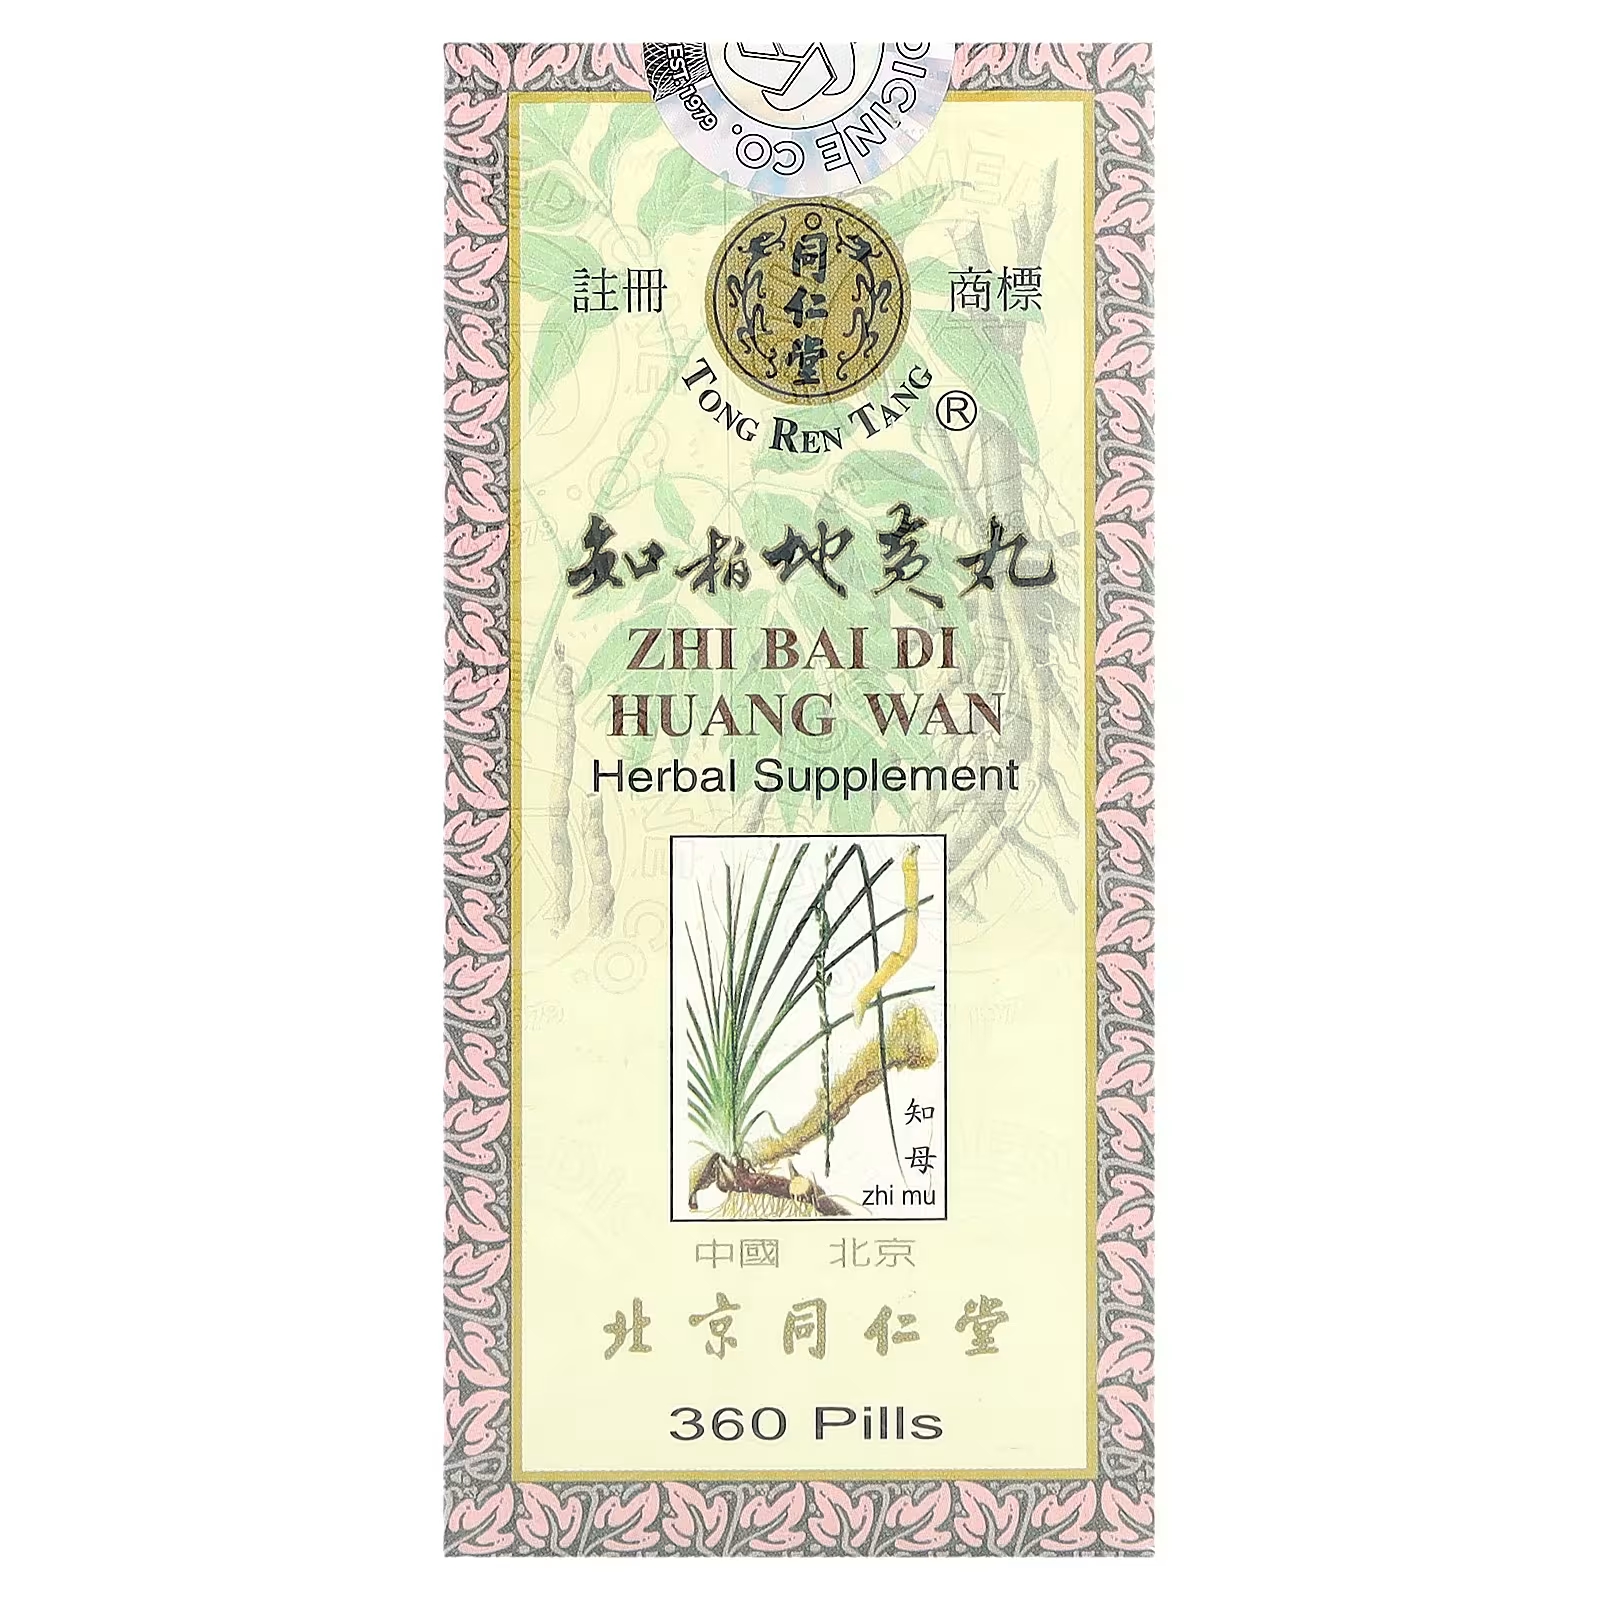 Растительная добавка Tong Ren Tang, 360 таблеток tong ren tang бай фэн ван поддерживает здоровье организма и помогает поддерживать уровень энергии 10 контейнеров